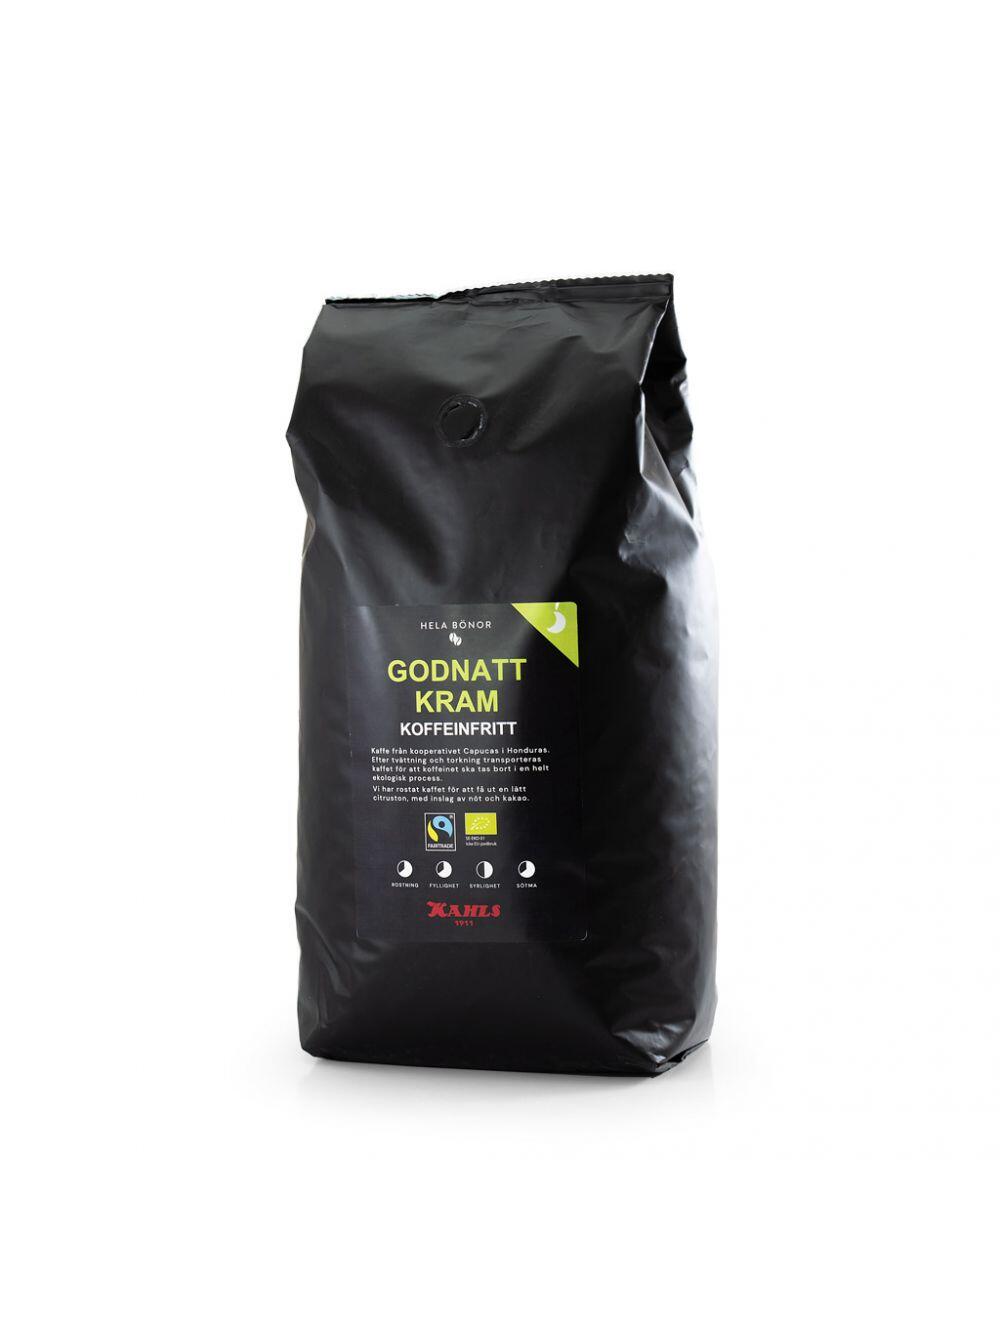 Kaffe Kahls Godnatt Kram Fairtrade & Eko 1kg